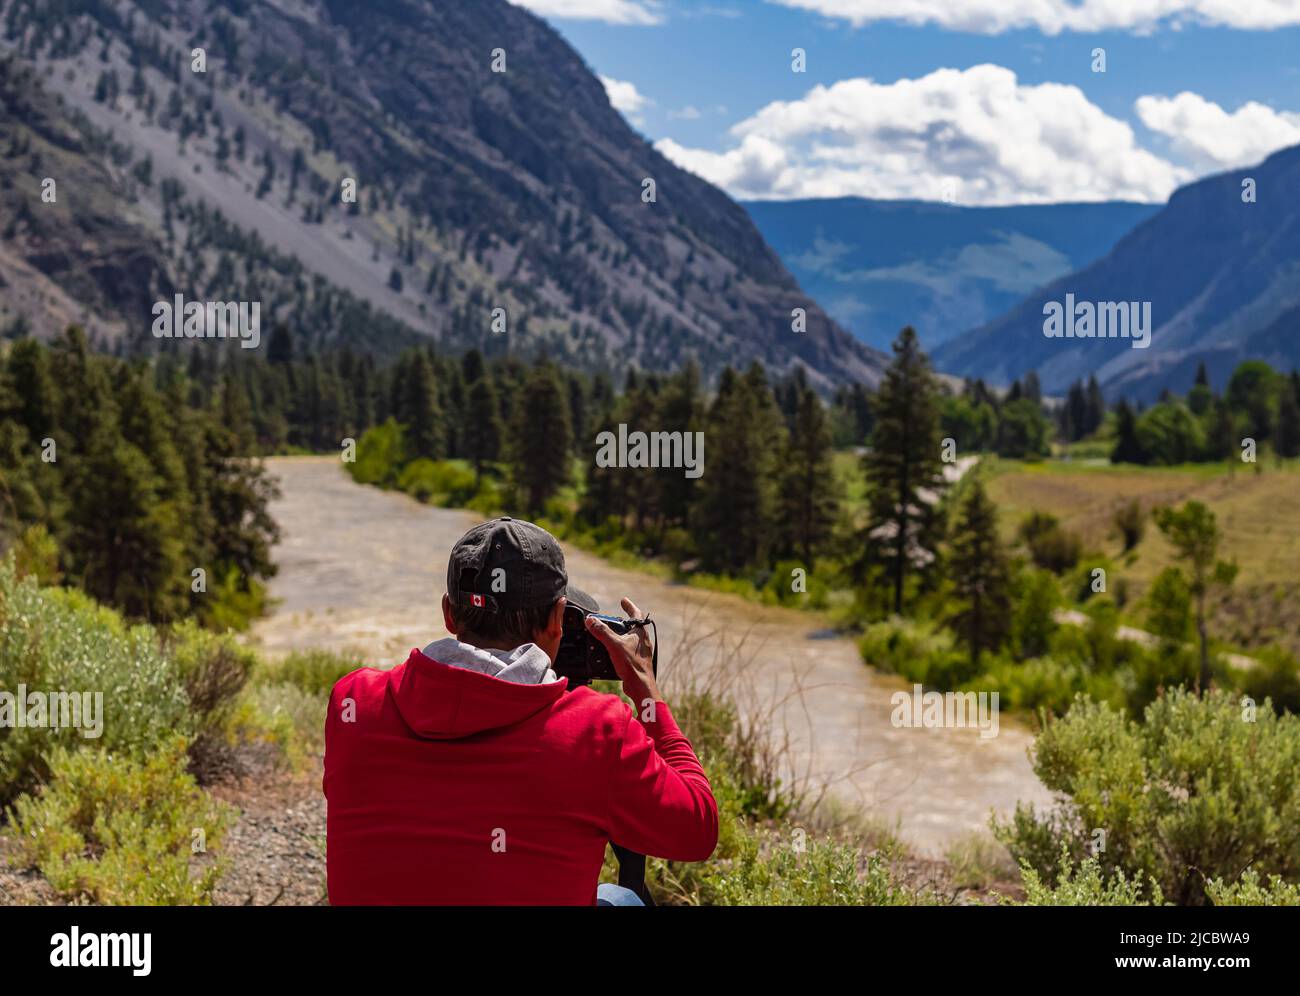 Ein Fotograf, der mit einer Digitalkamera in einem Gebirge fotografiert. Reise- und Active Lifestyle-Konzept. Kreative professionelle Fotografie. Phot Stockfoto